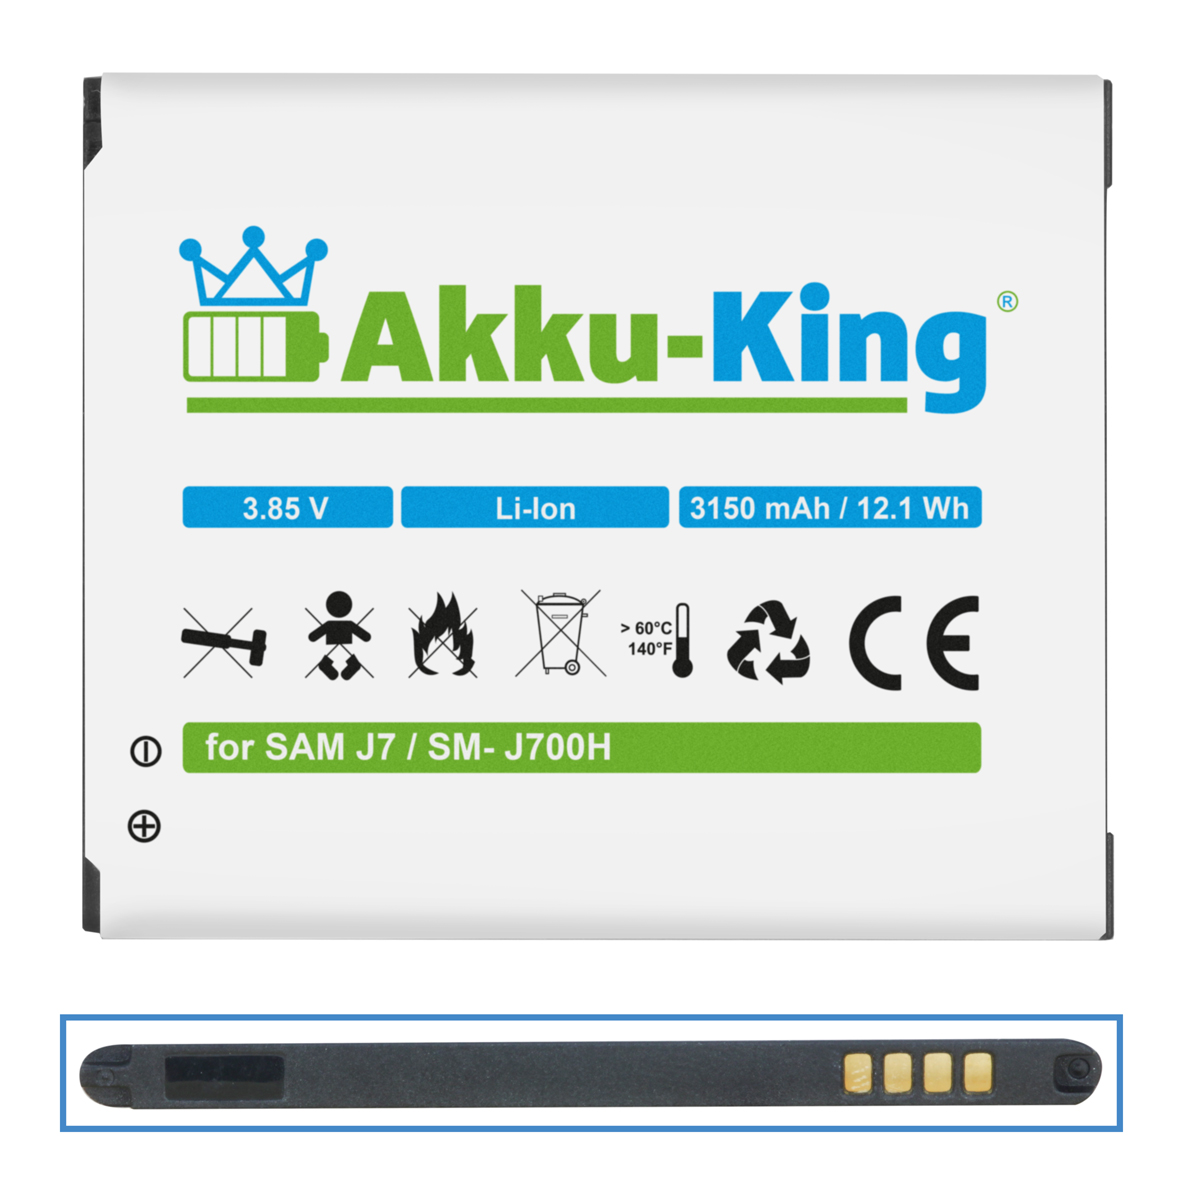 kompatibel EB-BJ700BBC Handy-Akku, Samsung Li-Ion 3.85 AKKU-KING Akku Volt, 3150mAh mit